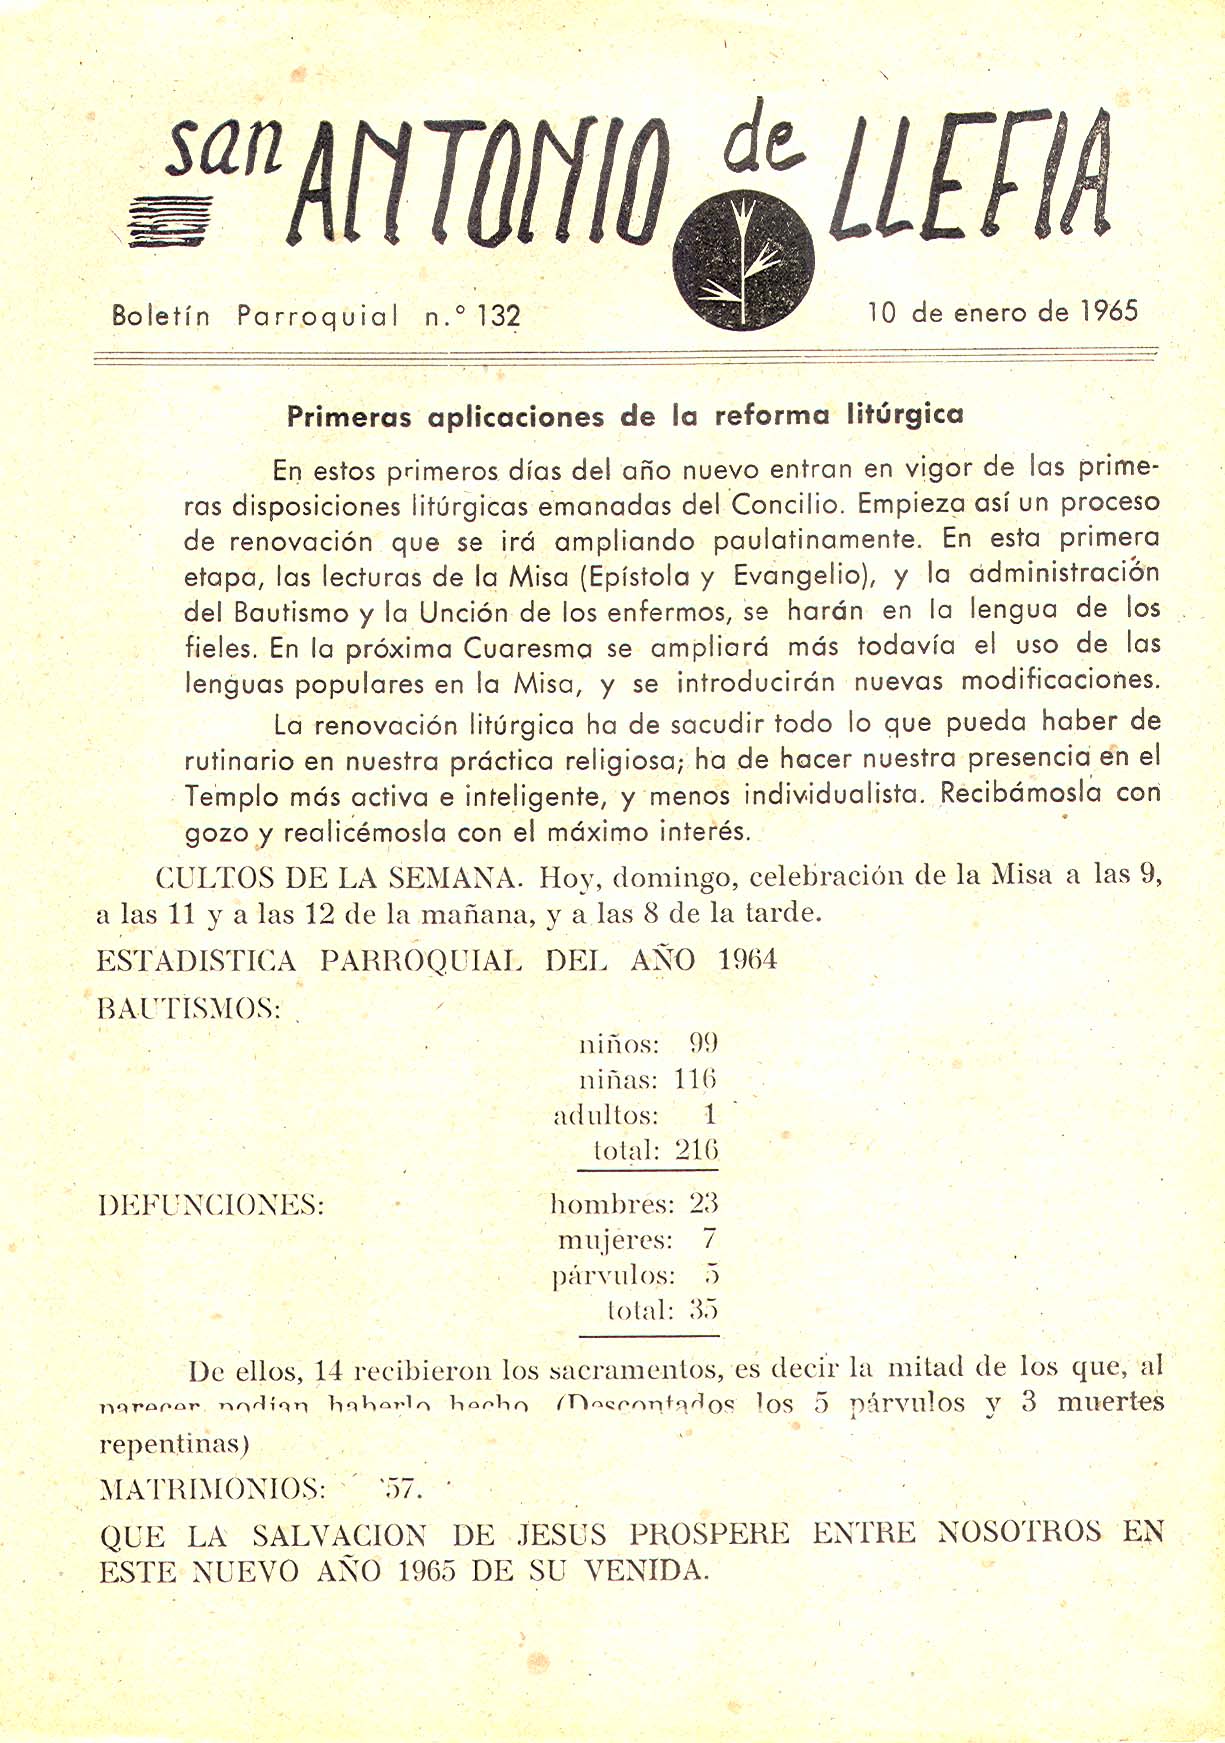 1965 Boletin parroquial nÃºm 132